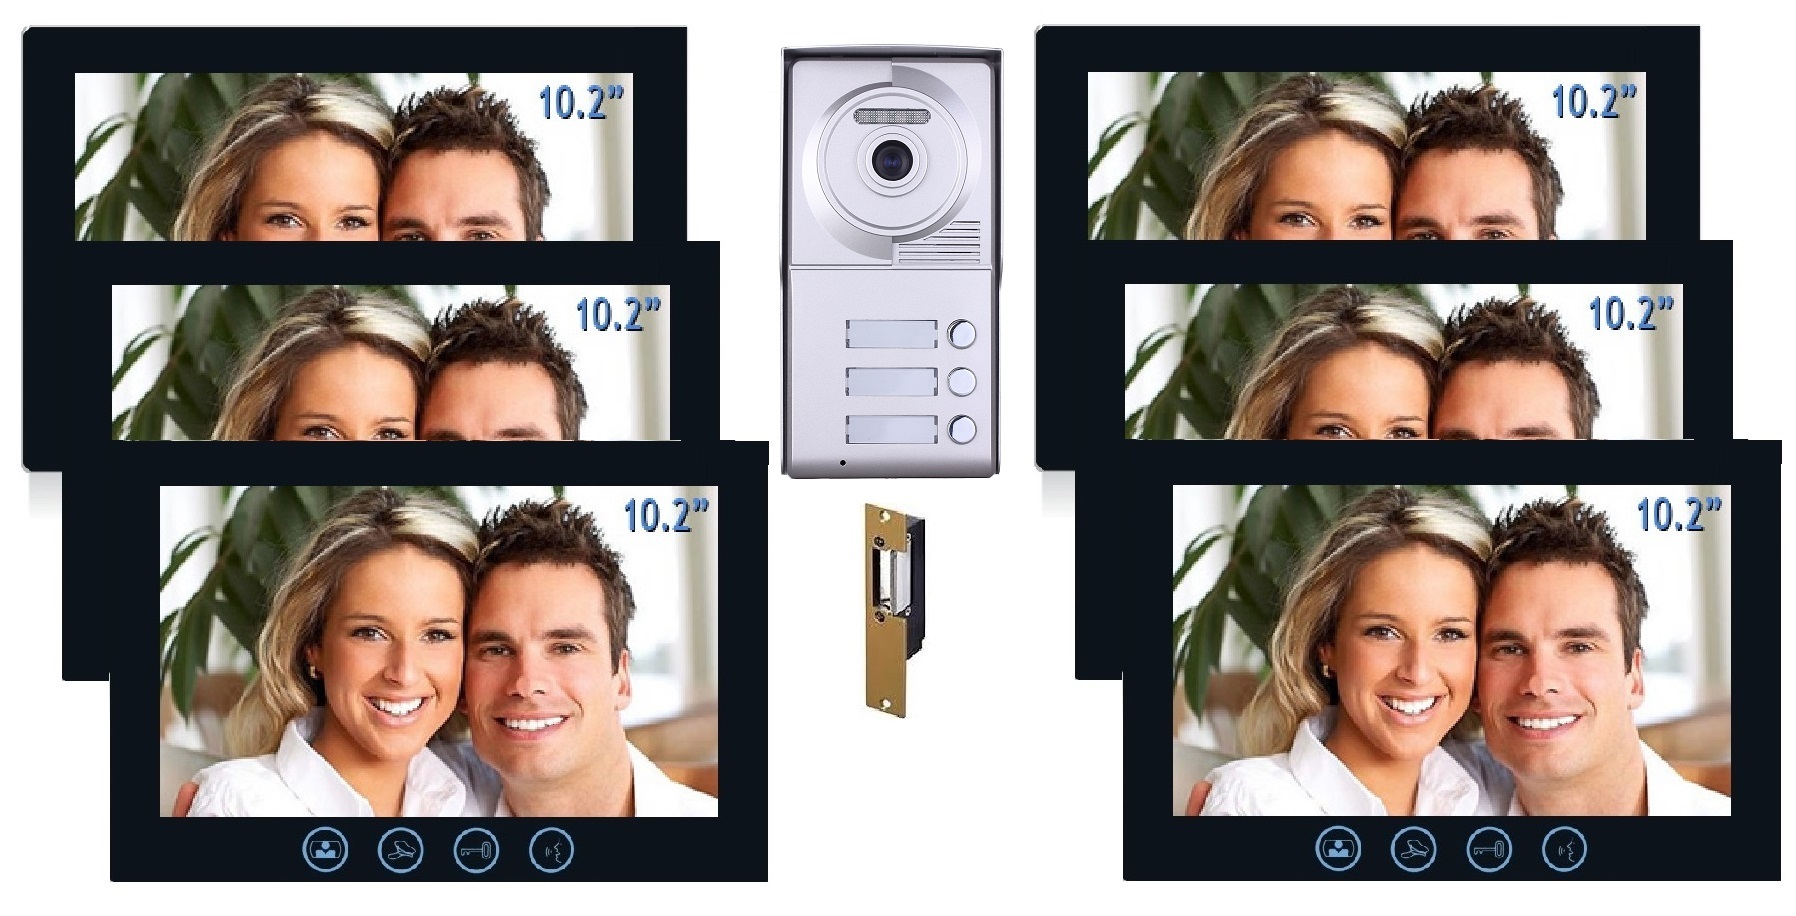 BEC Video Intercom Door Bell Six 10.2" Color Monitor